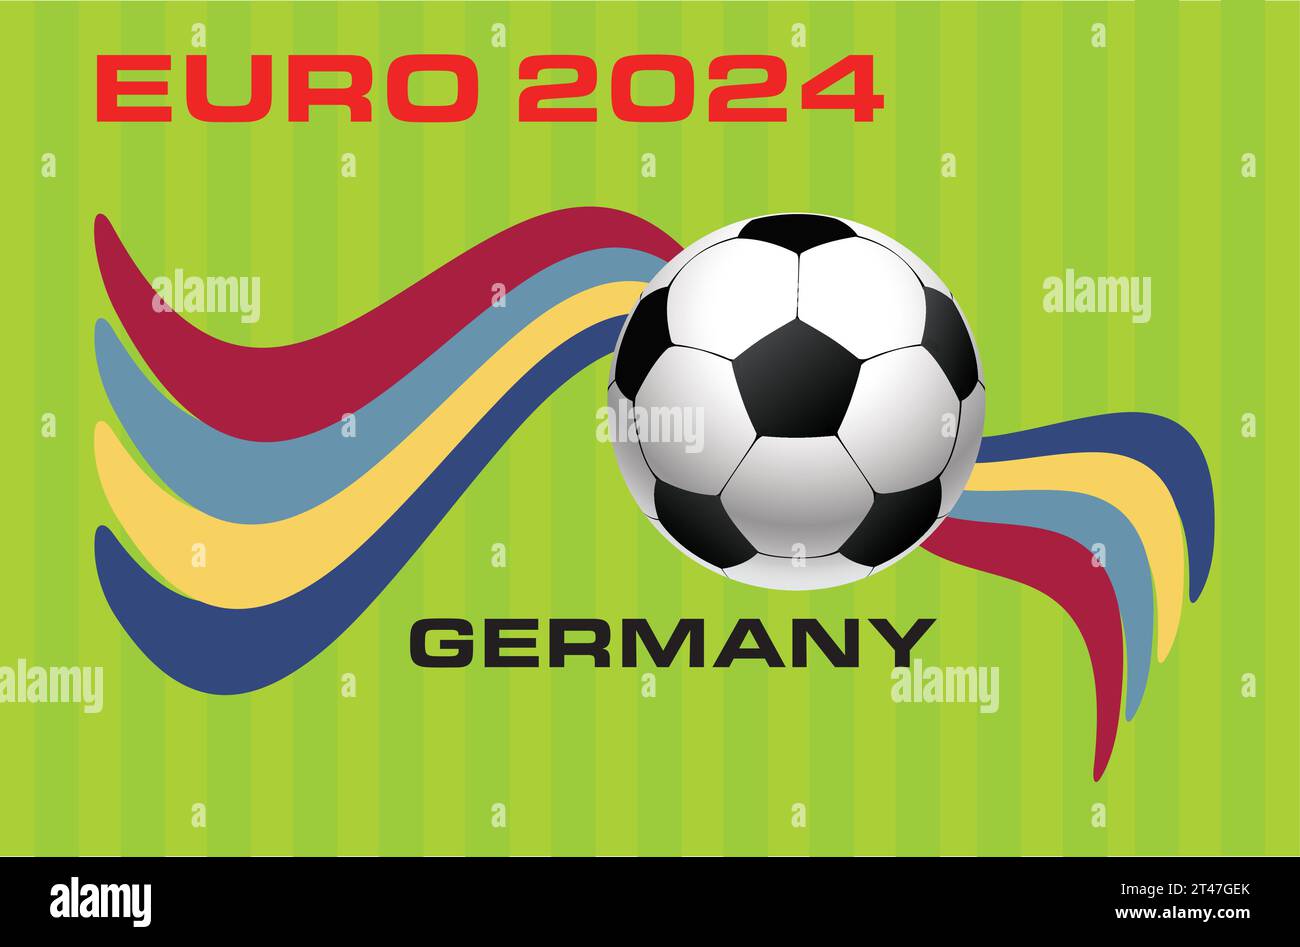 Fußball-Europaturnier 2024 Deutschland - die UEFA EURO 2024 beginnt am Freitag, den 14. Juni in München und endet mit dem Finale am Sonntag, den 14. Juli in Berlin. Stock Vektor